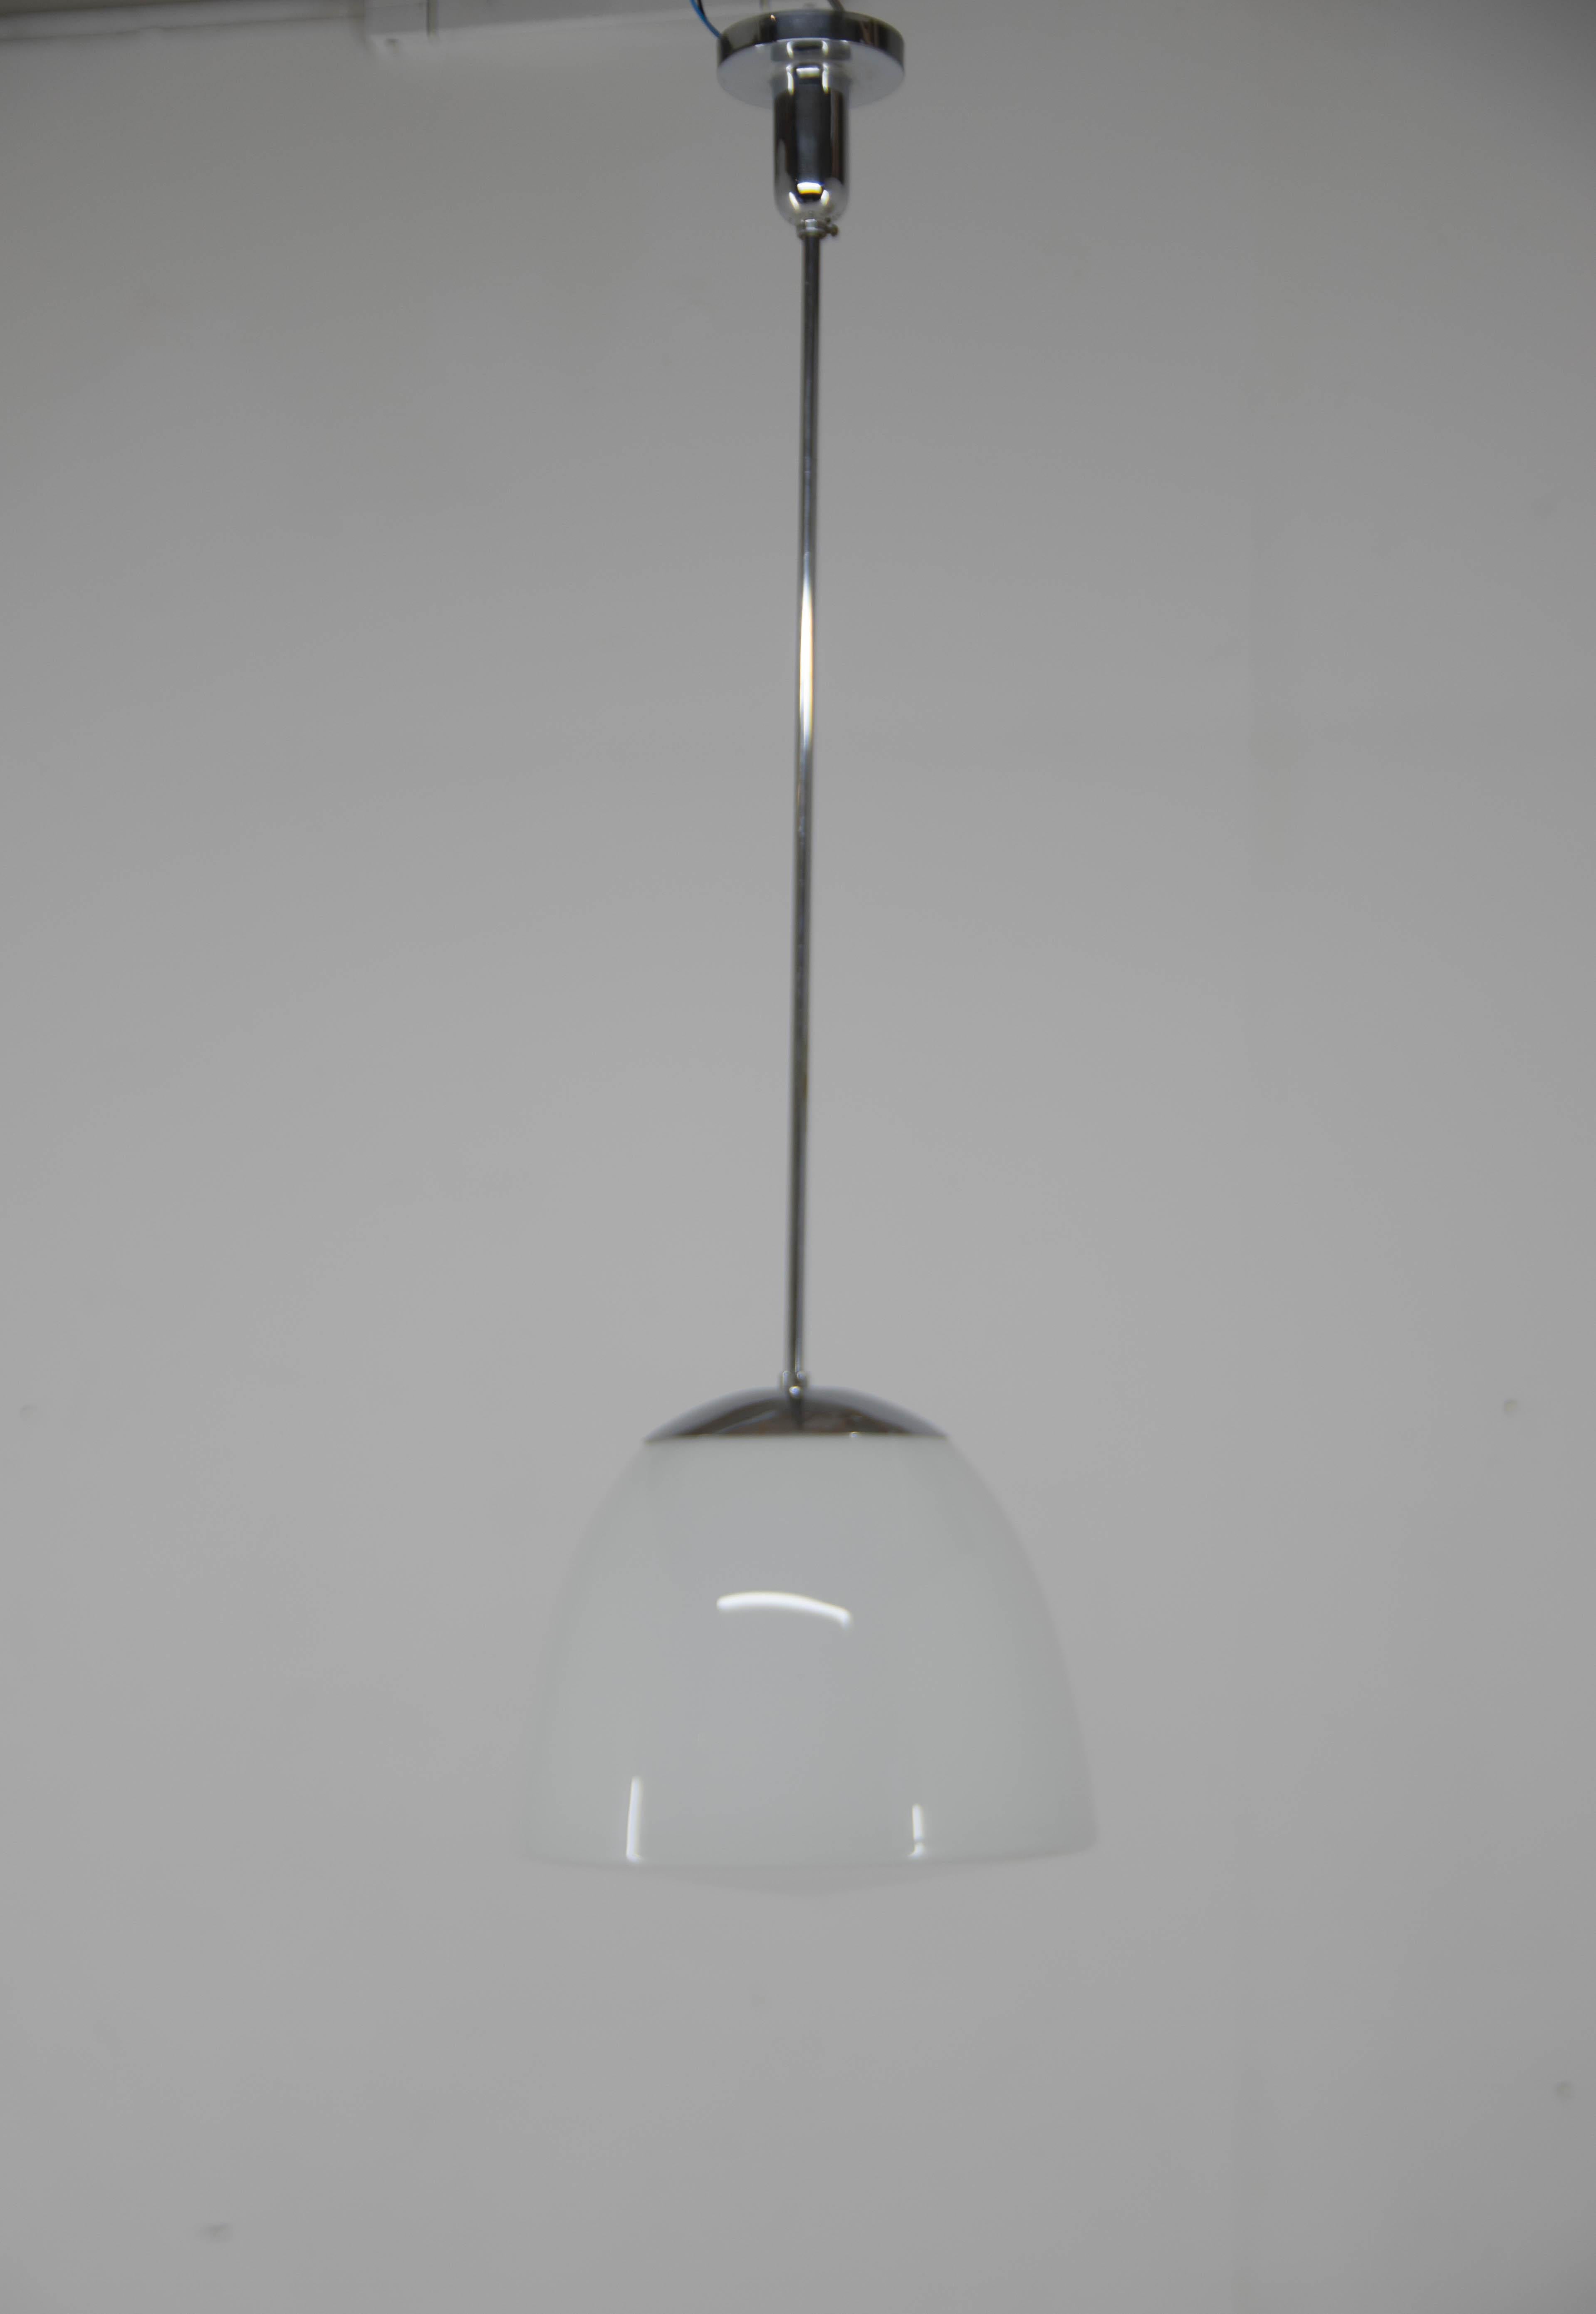 Magnifique pendentif Bauhaus simple et élégant fabriqué par IAS en Tchécoslovaquie.
La tige nickelée peut être raccourcie sur demande.
L'abat-jour en verre opalin est blanc sur la partie supérieure et semi-transparent sur la partie